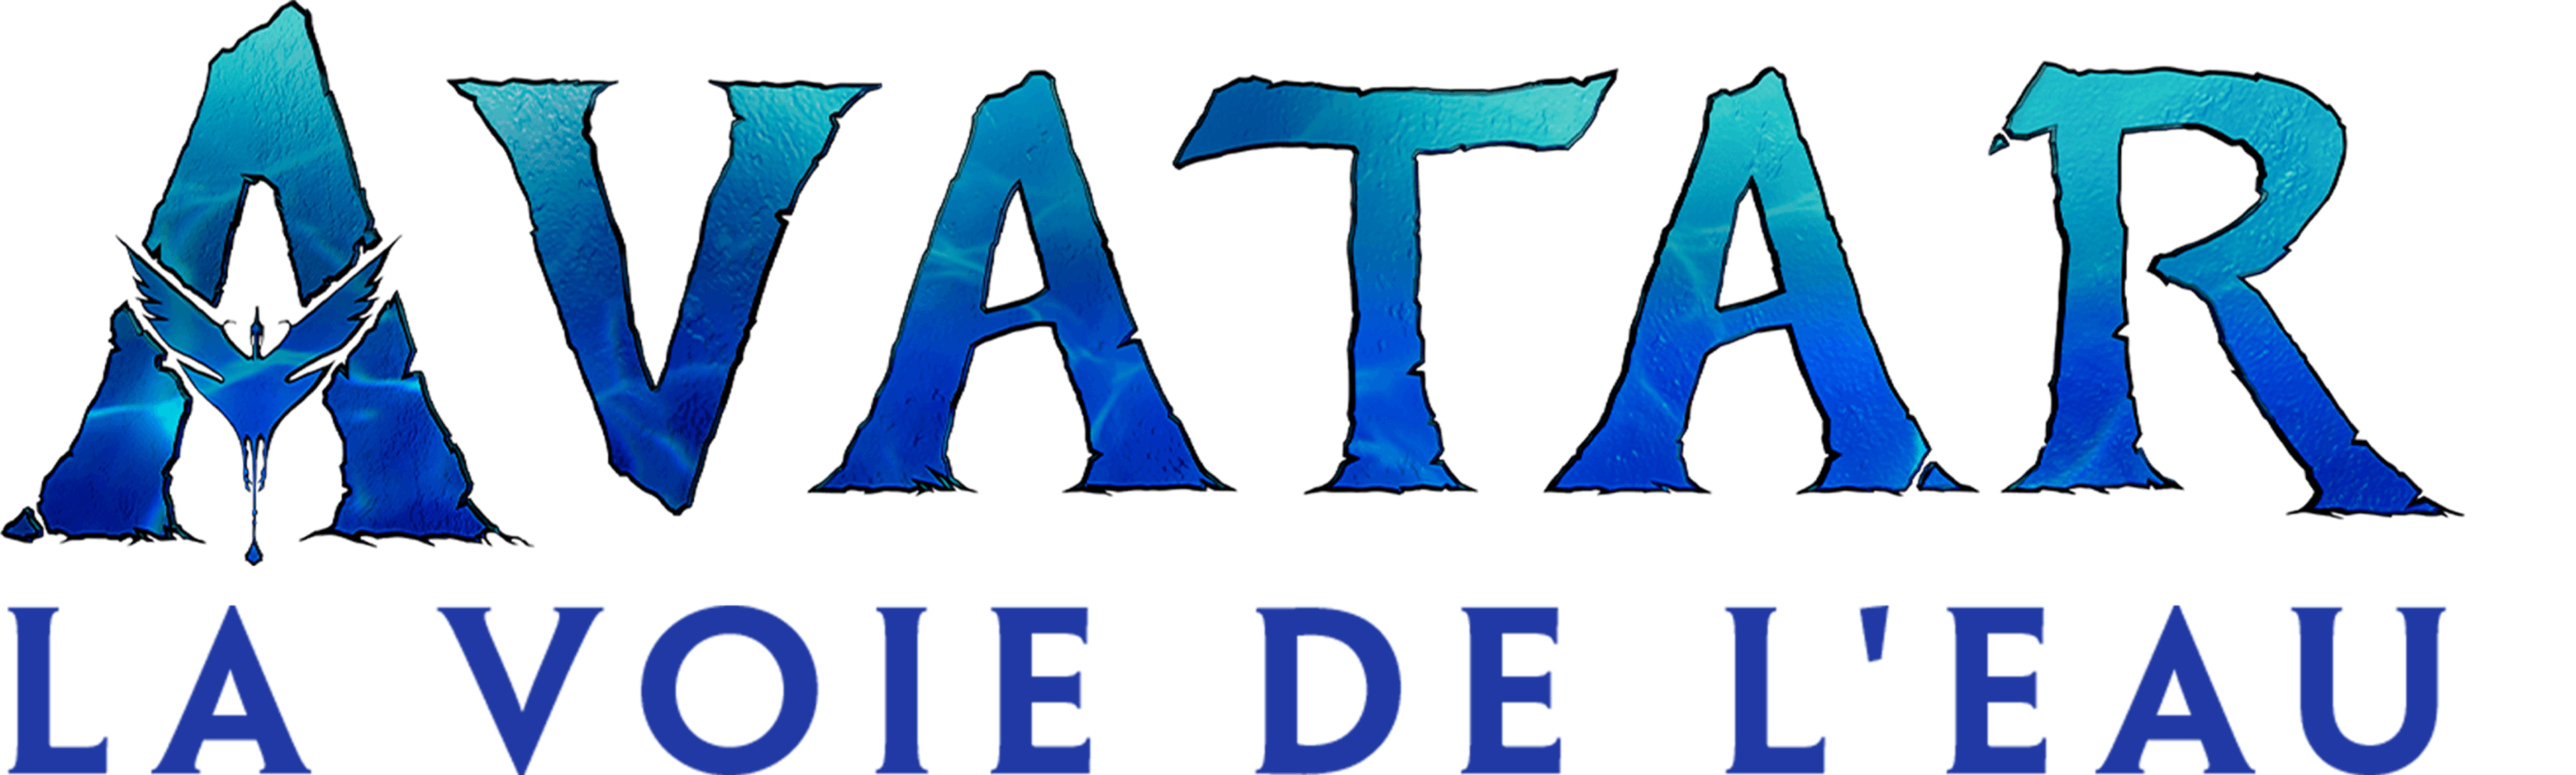 Avatar : La Voie de l'eau